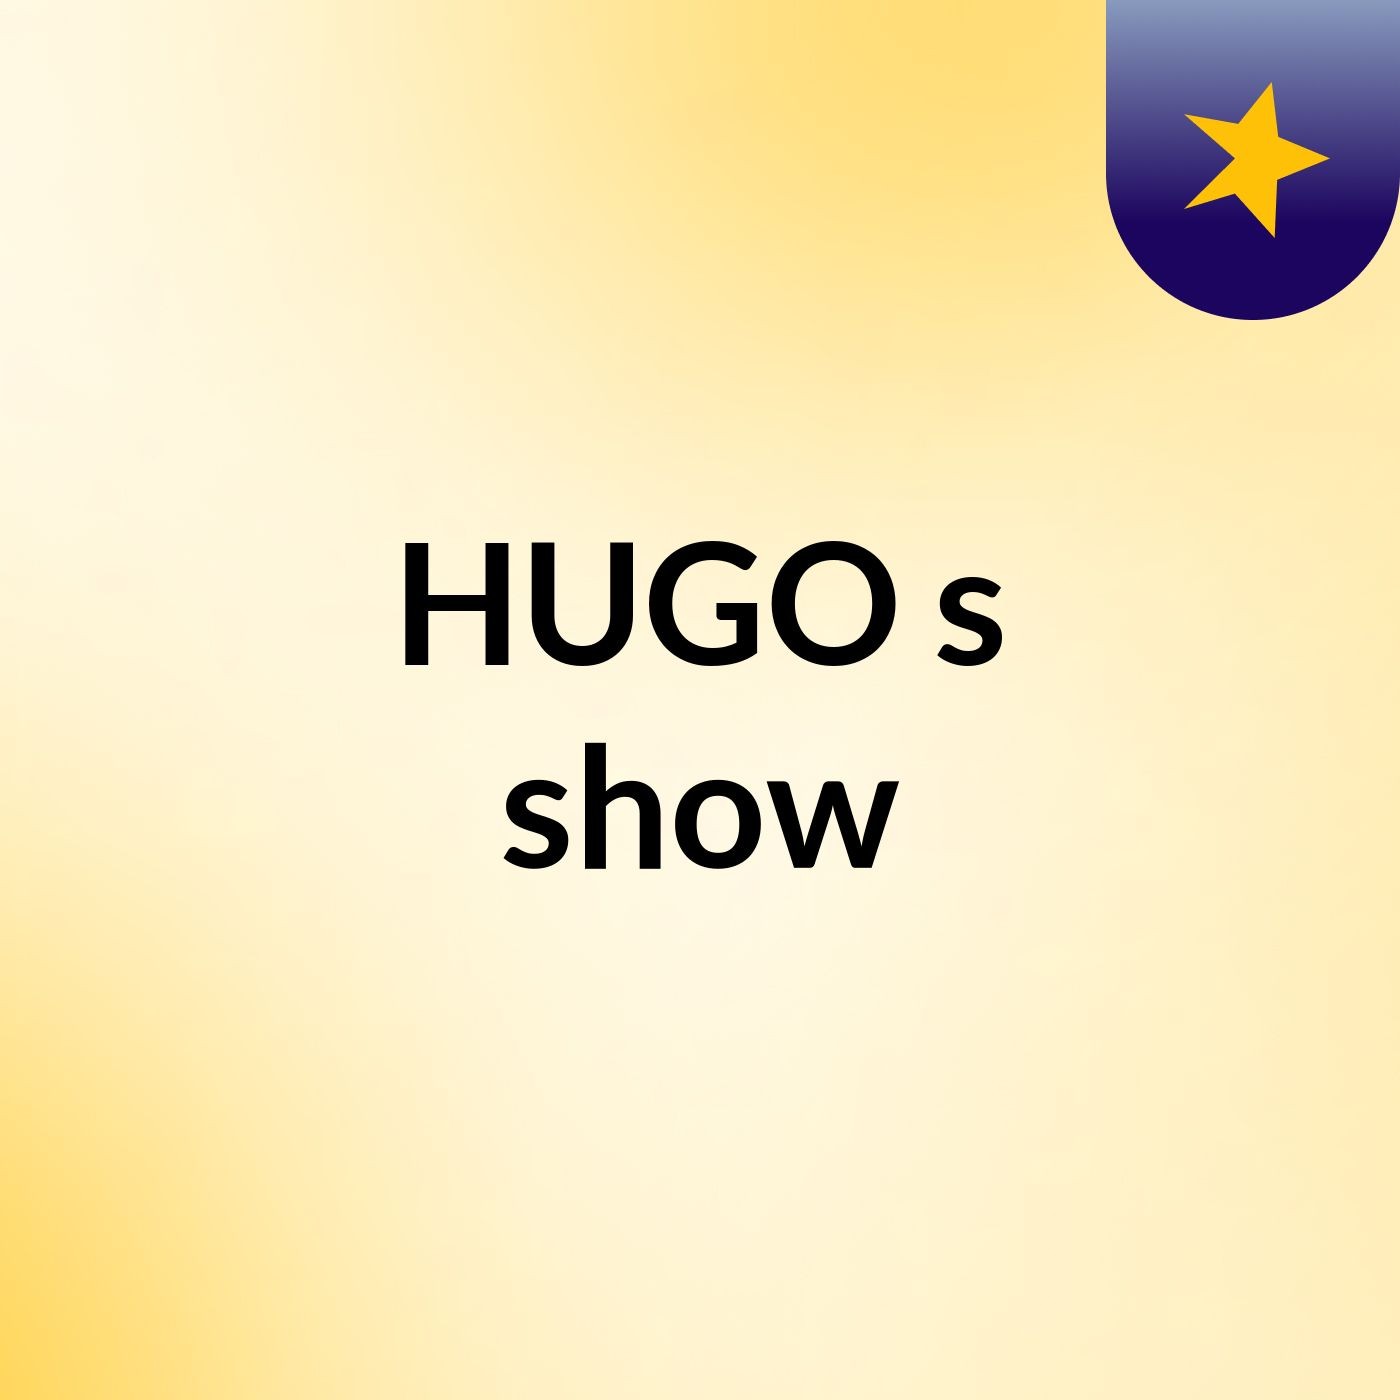 HUGO's show